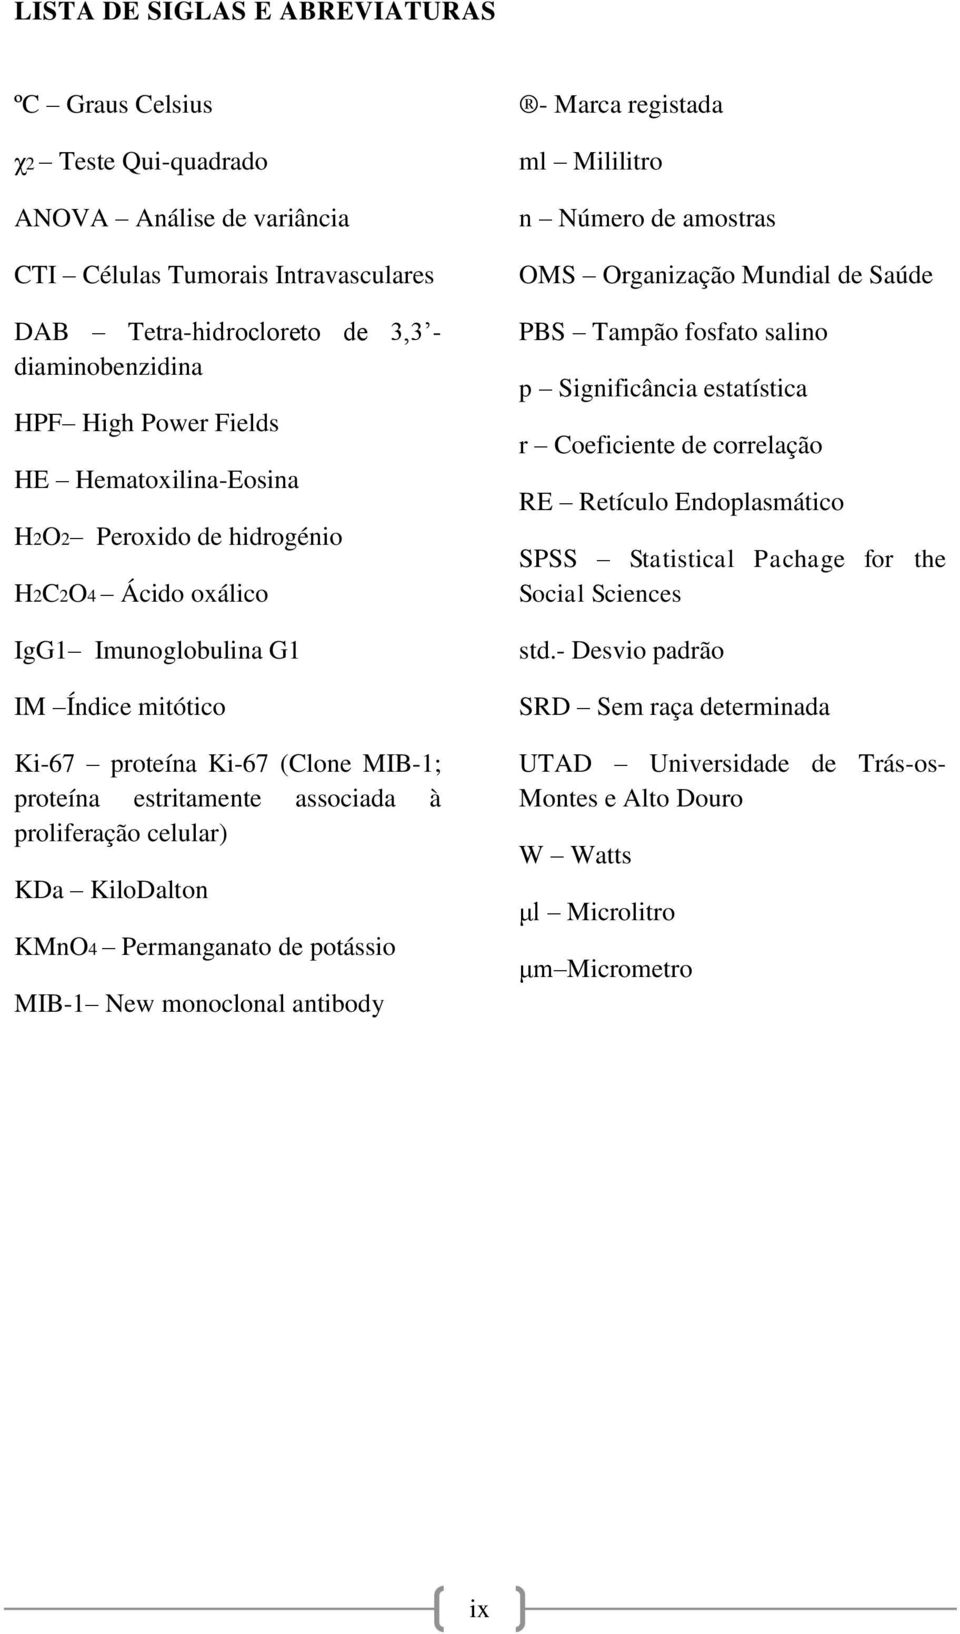 proliferação celular) KDa KiloDalton KMnO4 Permanganato de potássio MIB-1 New monoclonal antibody - Marca registada ml Mililitro n Número de amostras OMS Organização Mundial de Saúde PBS Tampão